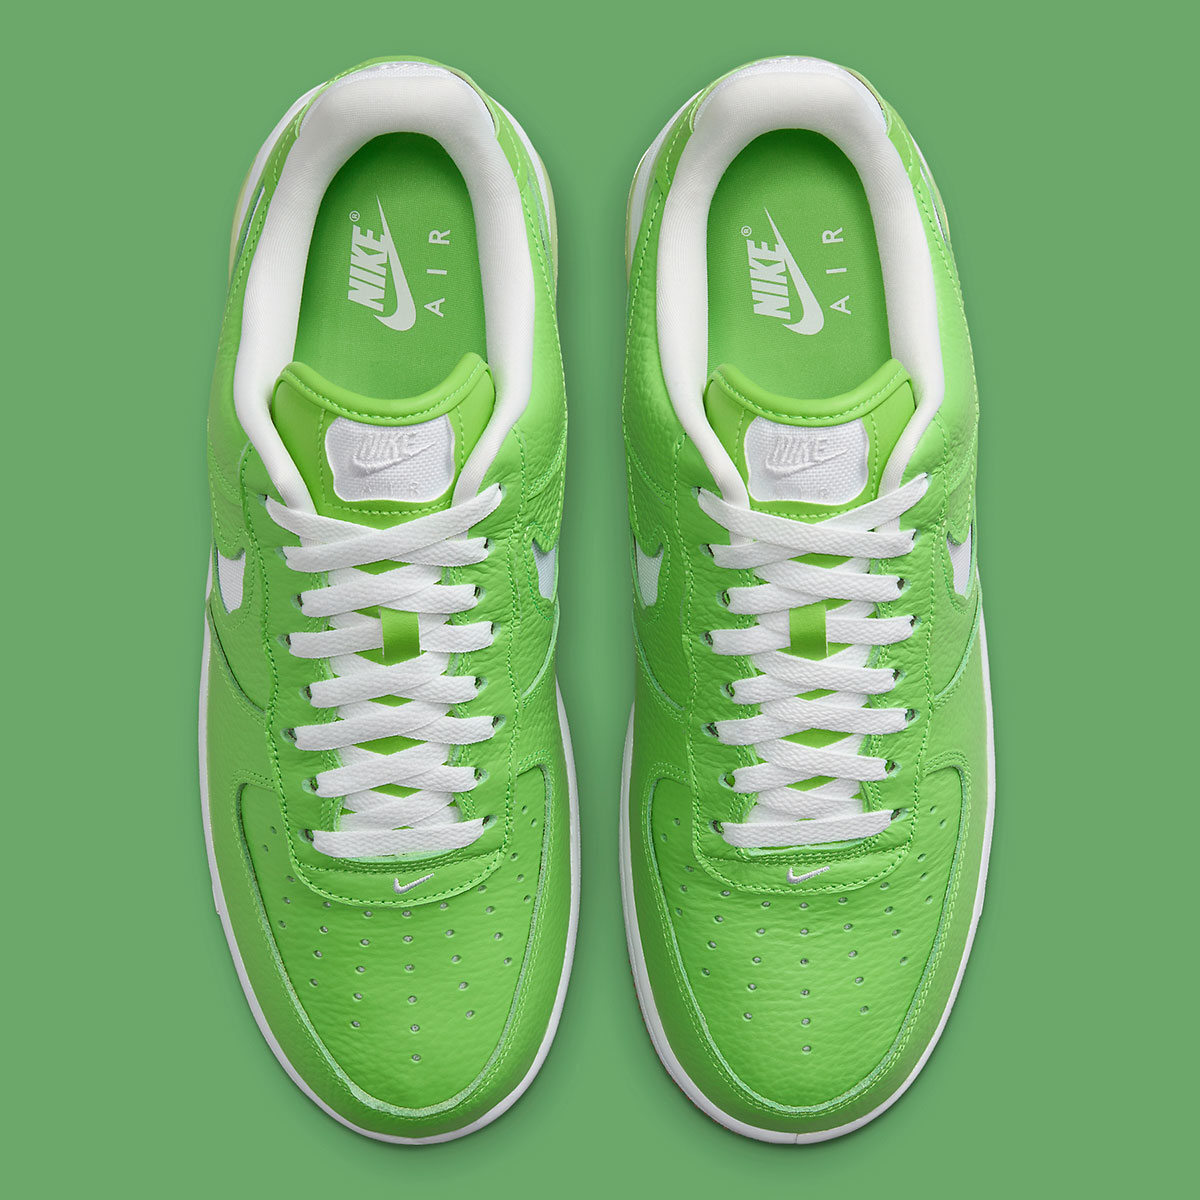 Nike Air Force 1 Low Evo Green Gum Hf3630 300 2